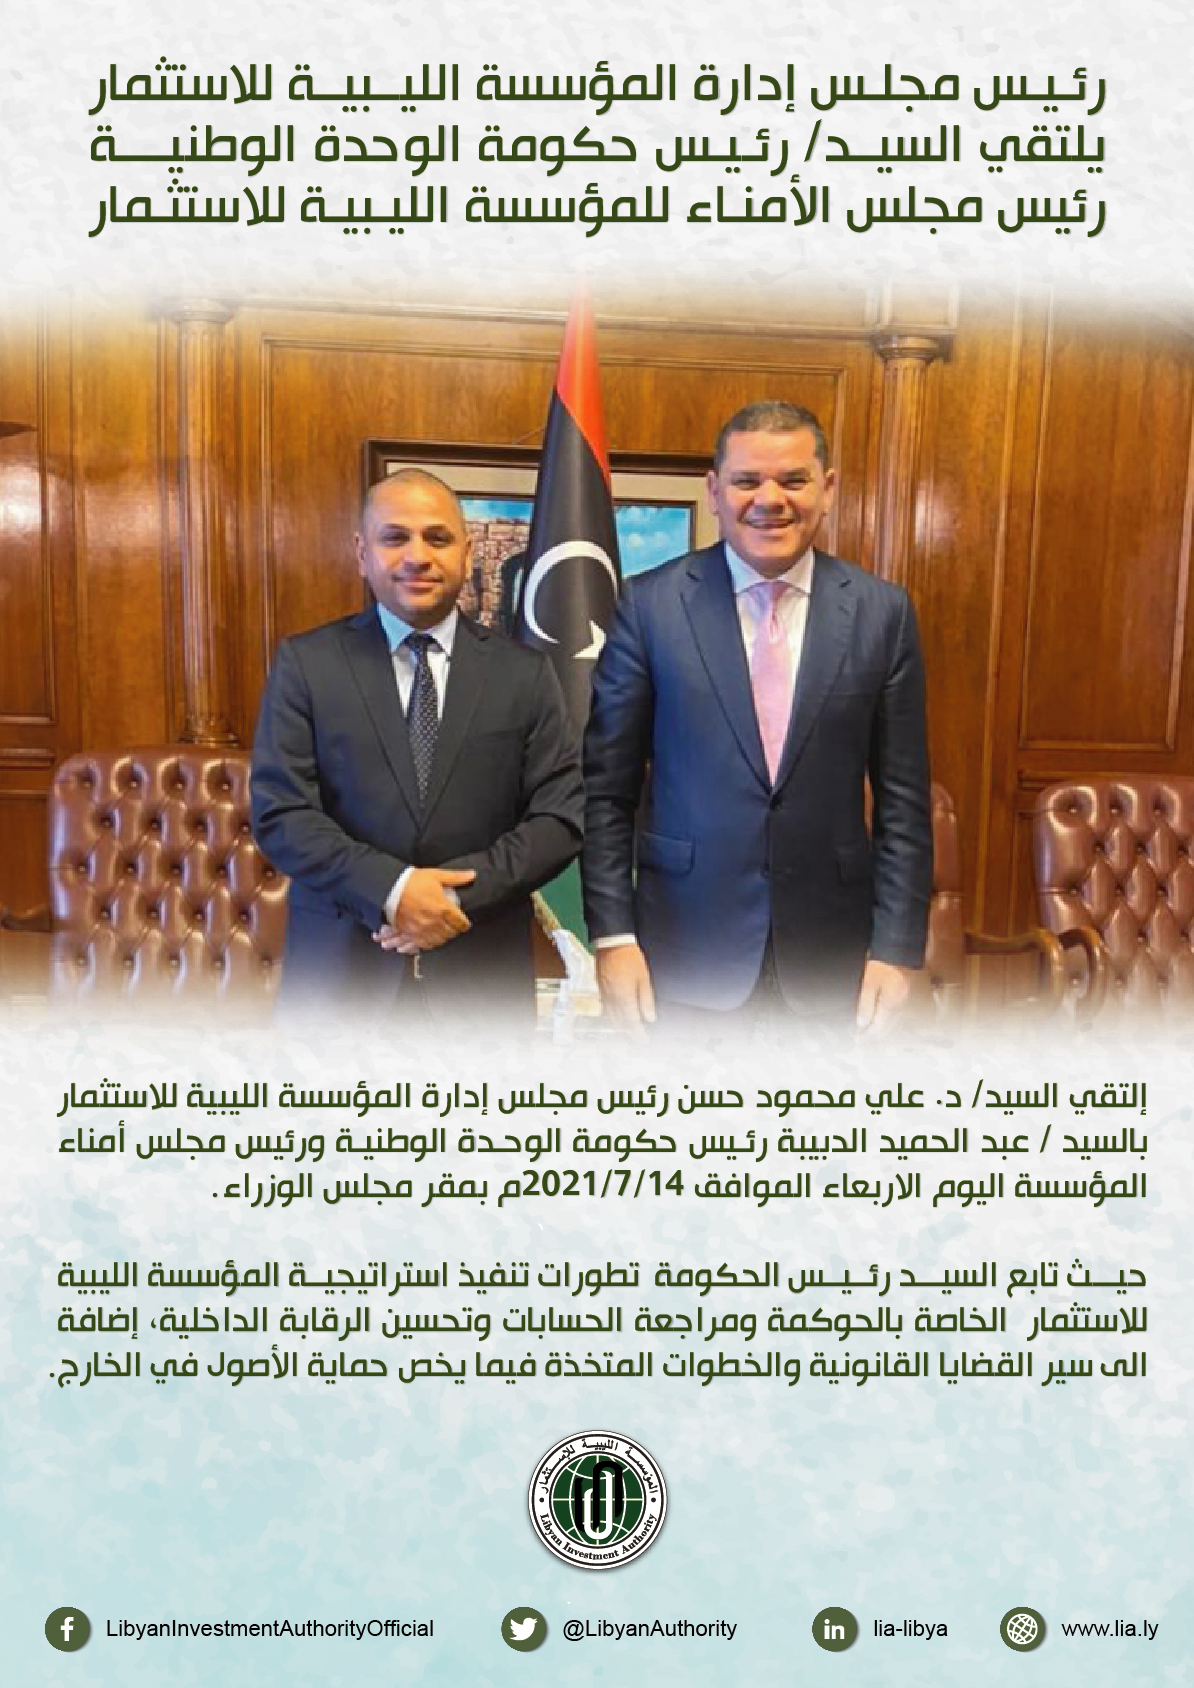 رئيس مجلس إدارة المؤسسة الليبية للاستثمار يلتقي السيد/ رئيس حكومة الوحدة الوطنية رئيس مجلس الأمناء للمؤسسة الليبية للاستثمار